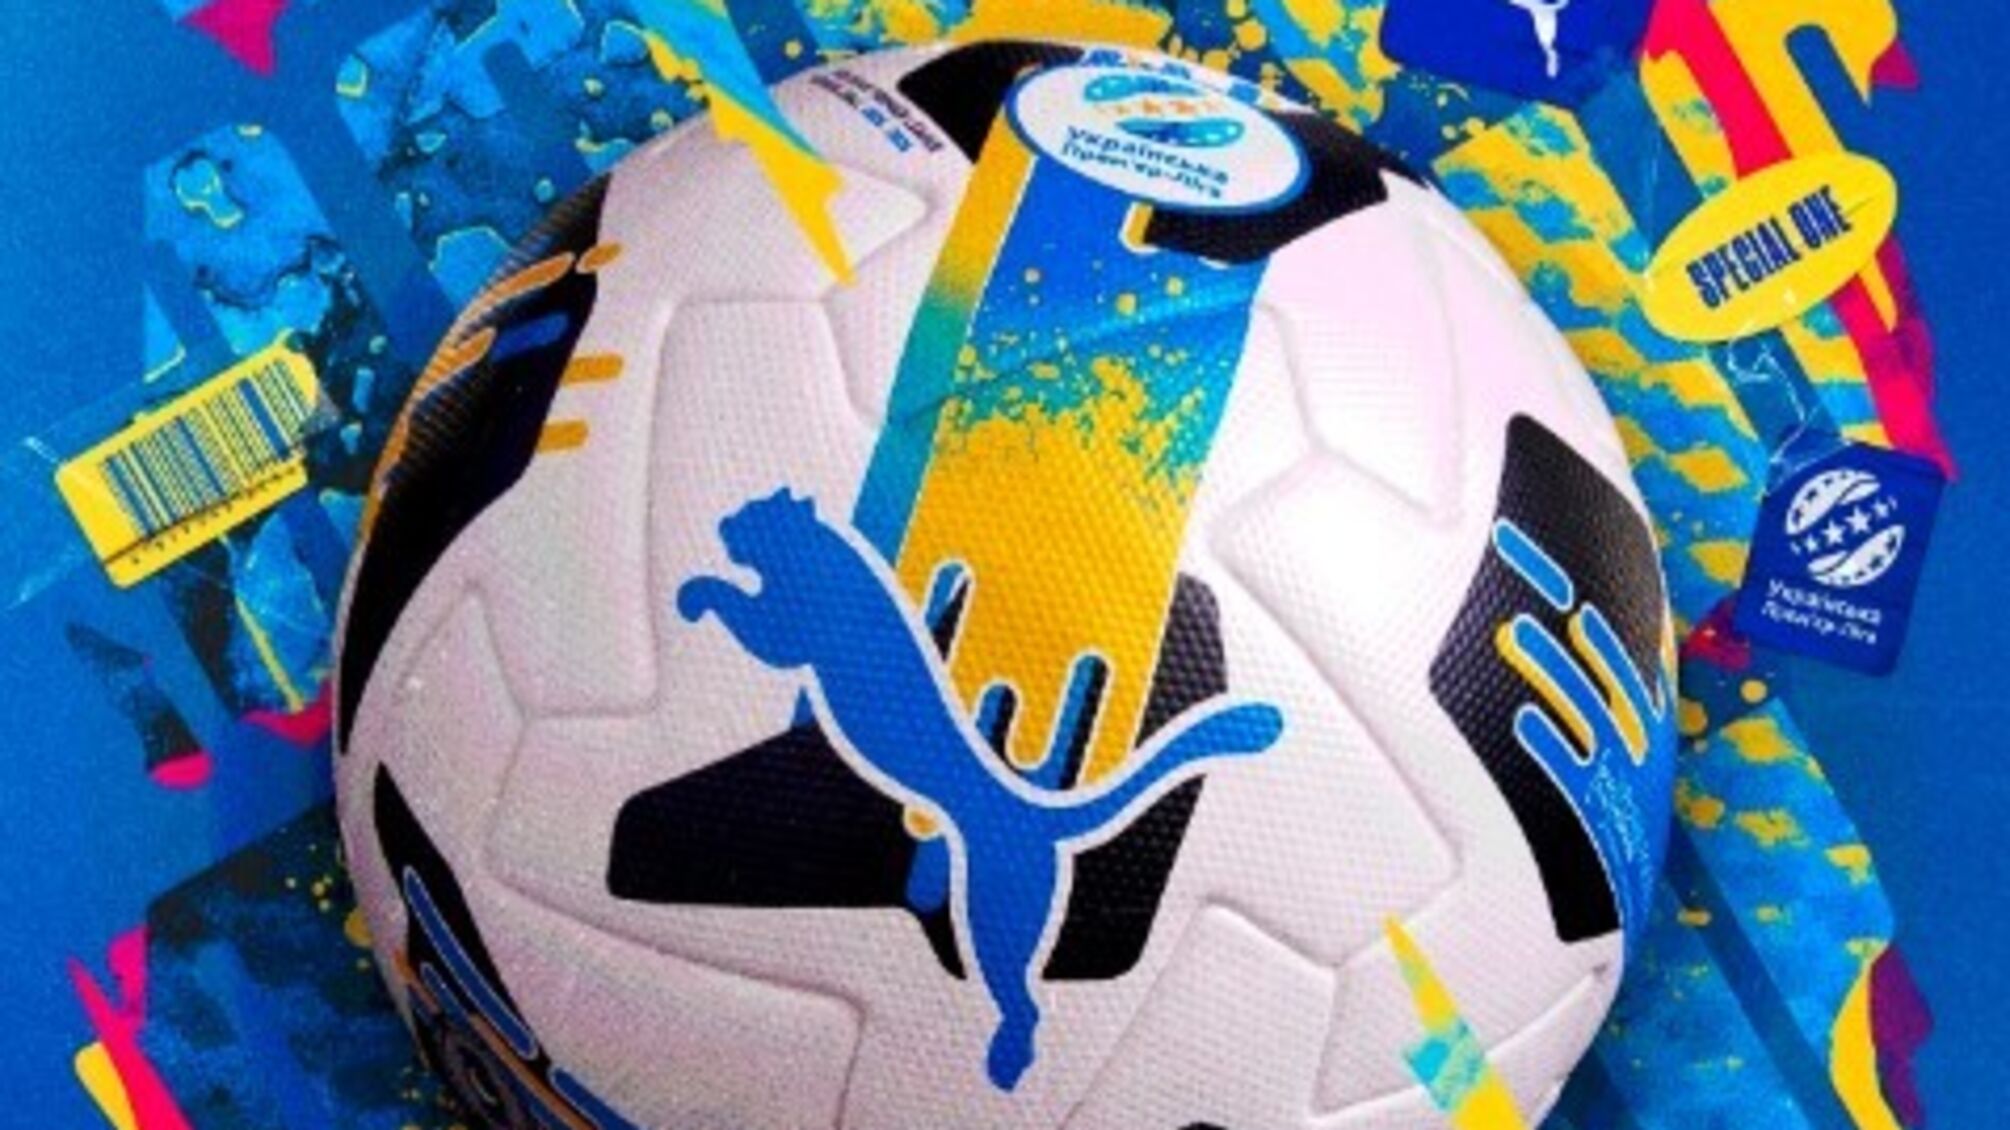 УПЛ получила официальный мяч в украинских цветах от компании Puma